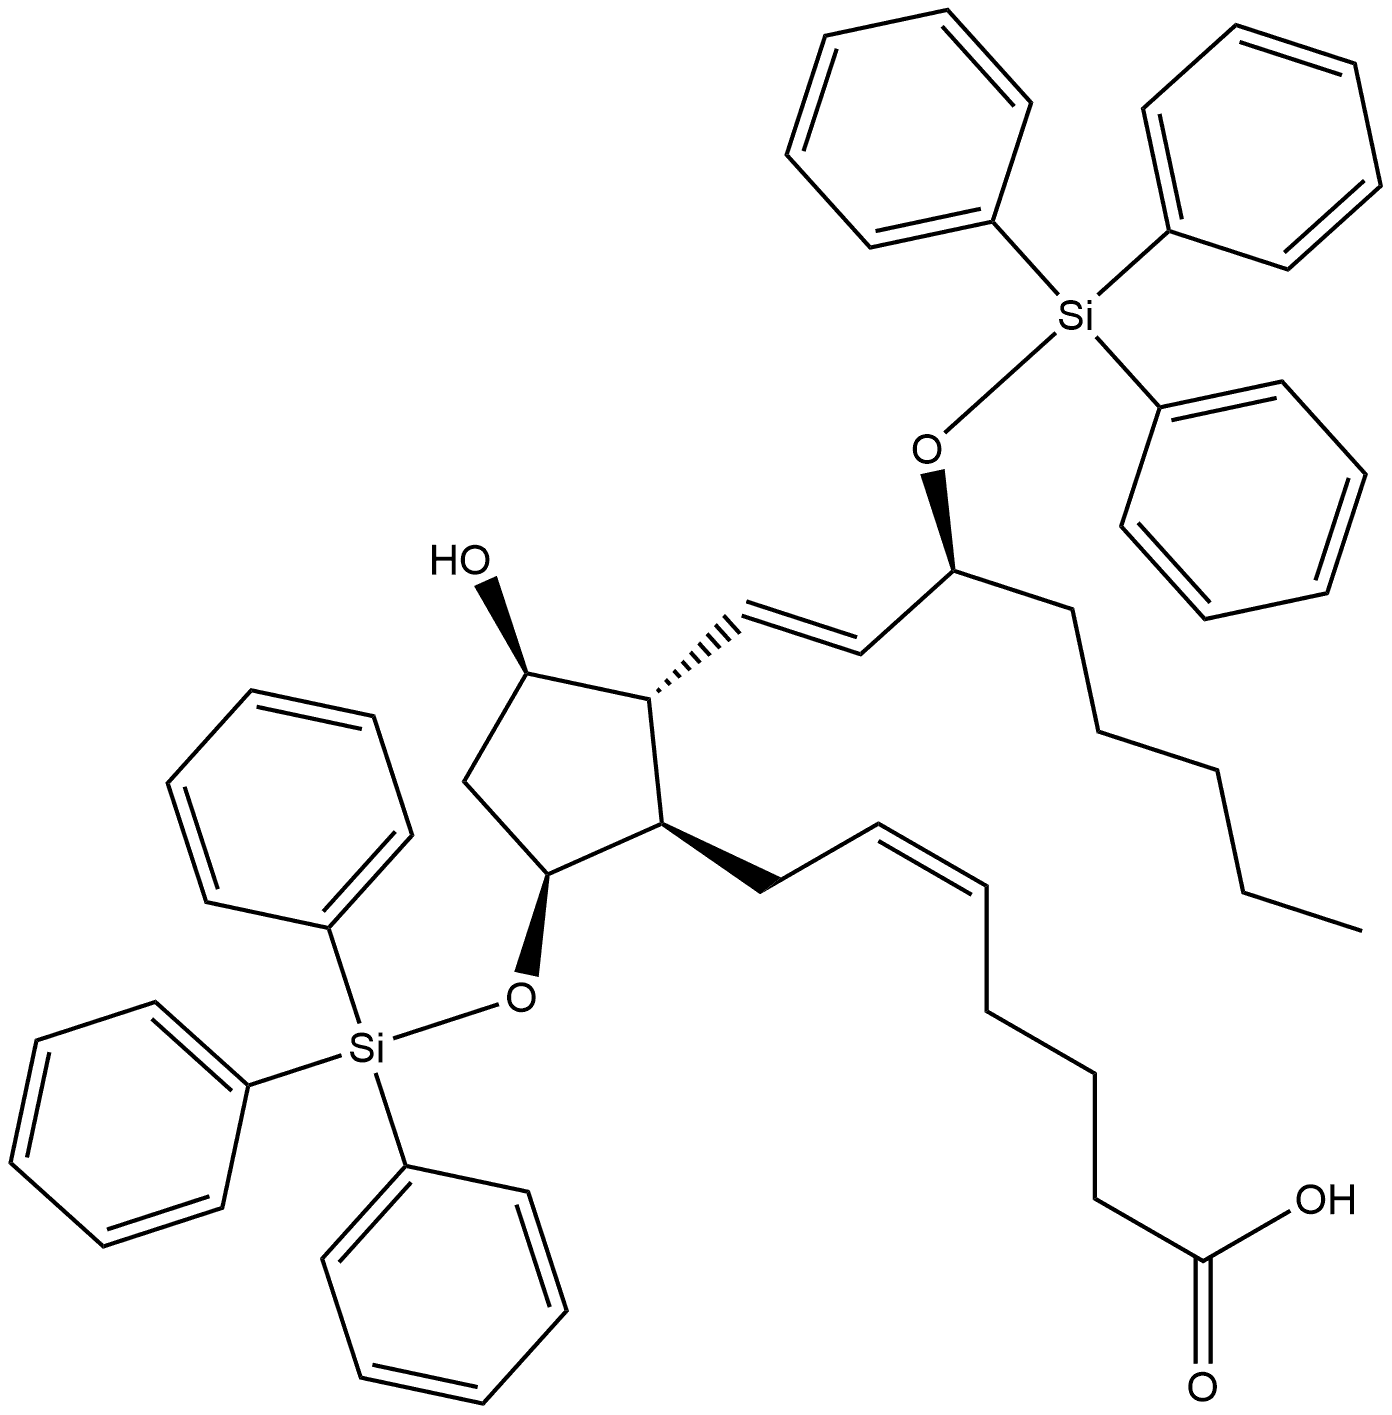 Prosta-5,13-dien-1-oic acid, 11-hydroxy-9,15-bis[(triphenylsilyl)oxy]-, (5Z,9α,11α,13E,15S)- (9CI)